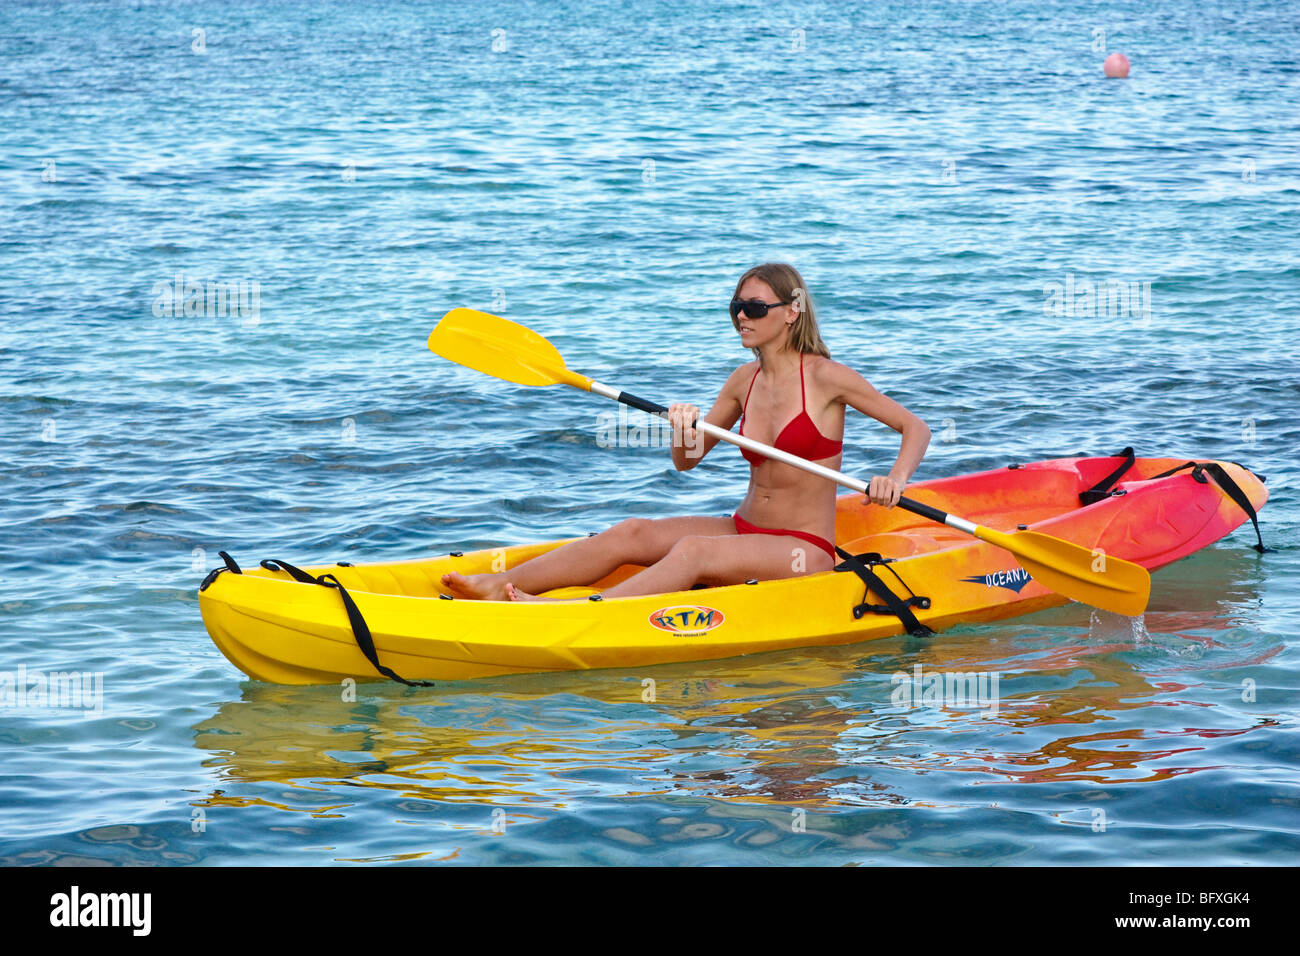 Giovane donna kayak tra le barriere coralline nell'Oceano Atlantico, Caraibi Cuba Foto Stock